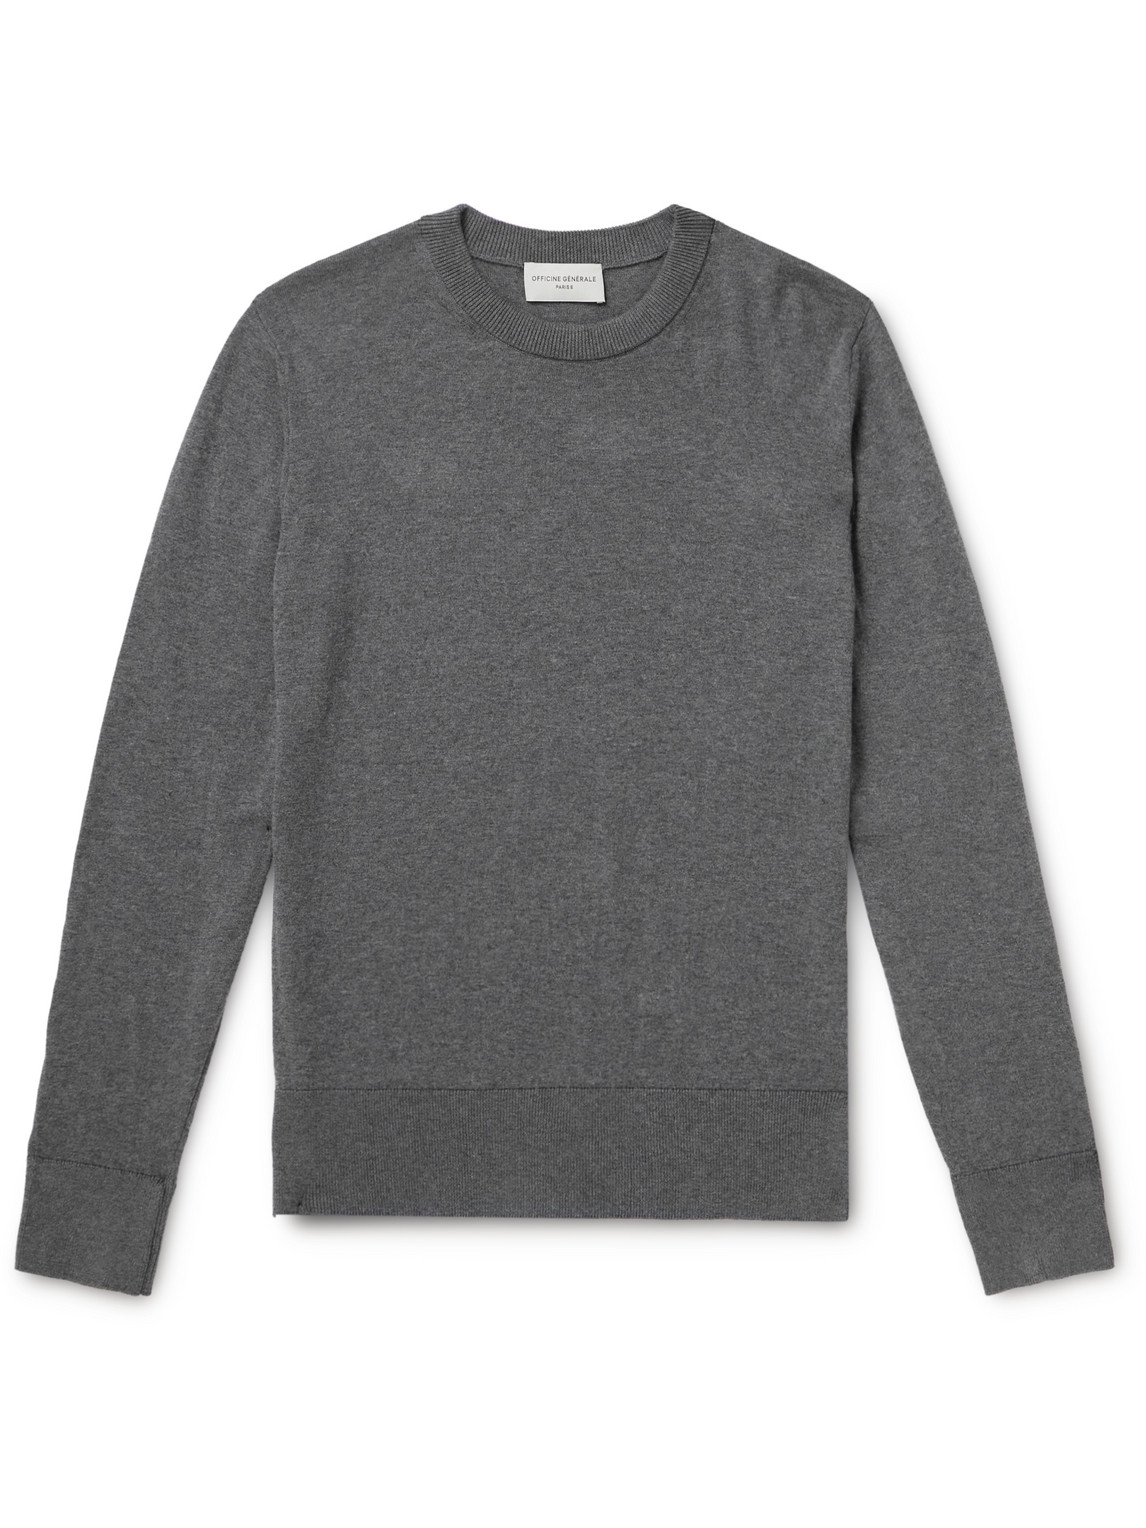 Officine Générale - Nilo Cotton Sweater - Men - Gray - M von Officine Générale